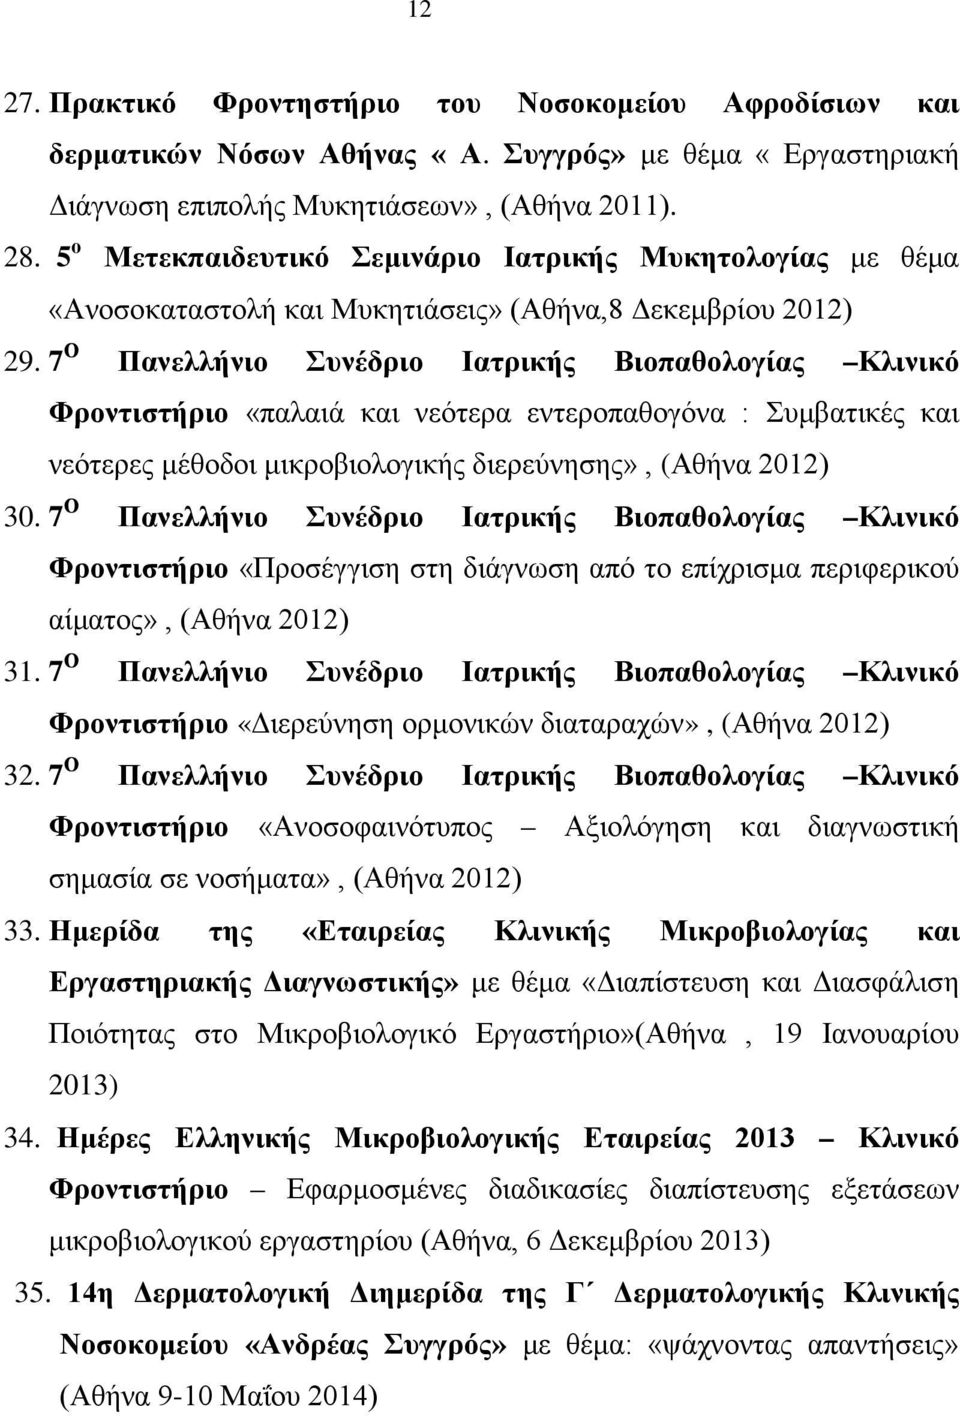 7 Ο Πανελλήνιο Συνέδριο Ιατρικής Βιοπαθολογίας Κλινικό Φροντιστήριο «παλαιά και νεότερα εντεροπαθογόνα : Συμβατικές και νεότερες μέθοδοι μικροβιολογικής διερεύνησης», (Αθήνα 2012) 30.